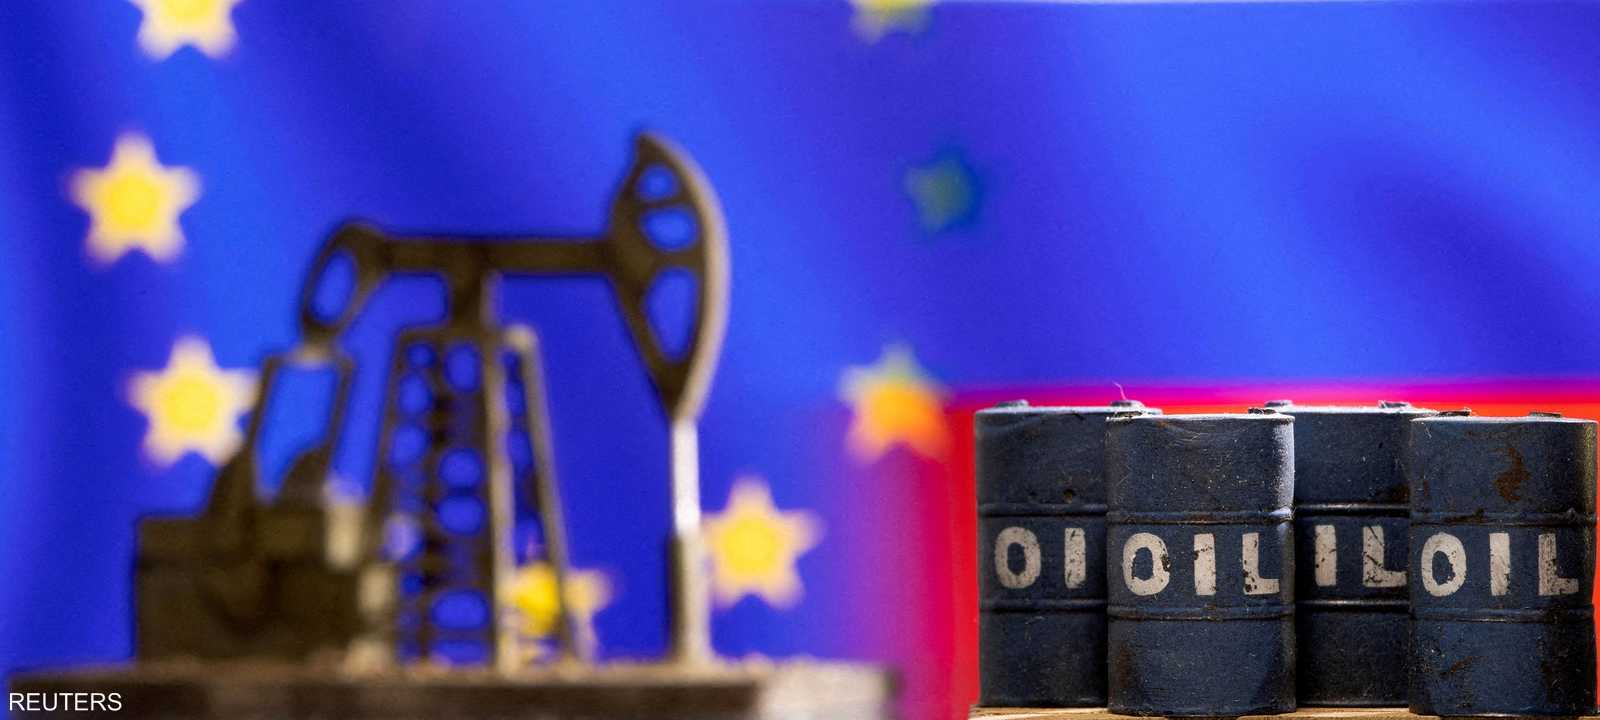 أوروبا تقرر خفض واردات النفط الروسي بـ 90% بحلول نهاية 2022